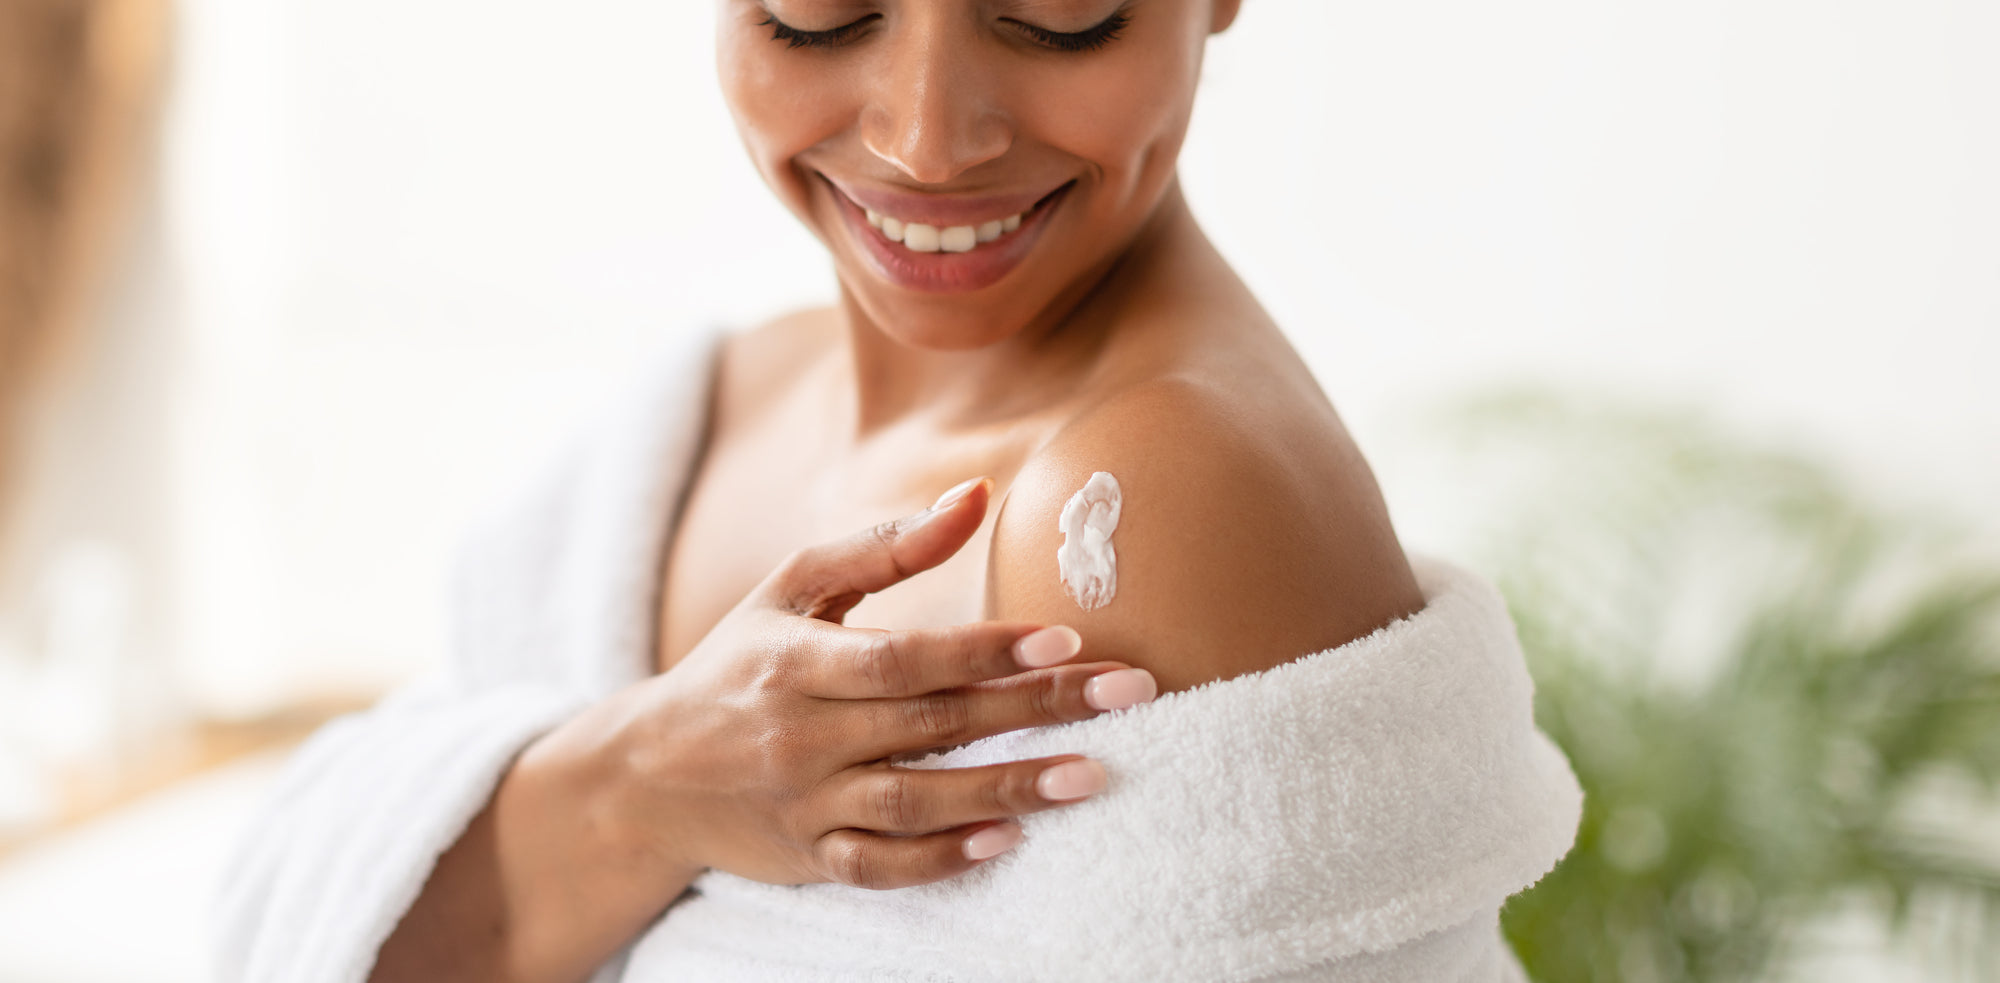 10 Body Skin Care Tips